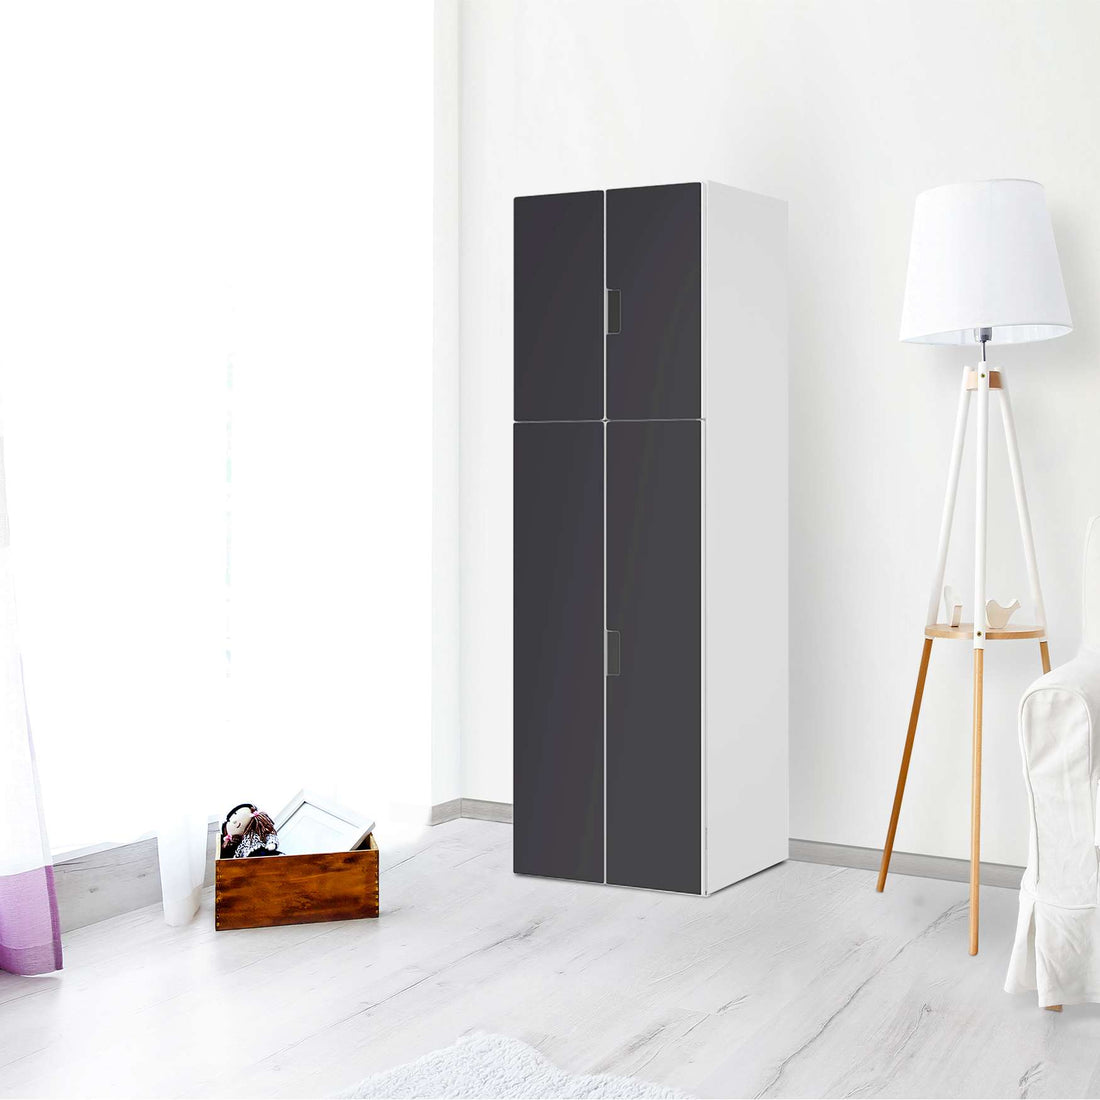 Selbstklebende Folie Grau Dark - IKEA Stuva kombiniert - 2 große Türen und 2 kleine Türen (Kombination 2) - Wohnzimmer